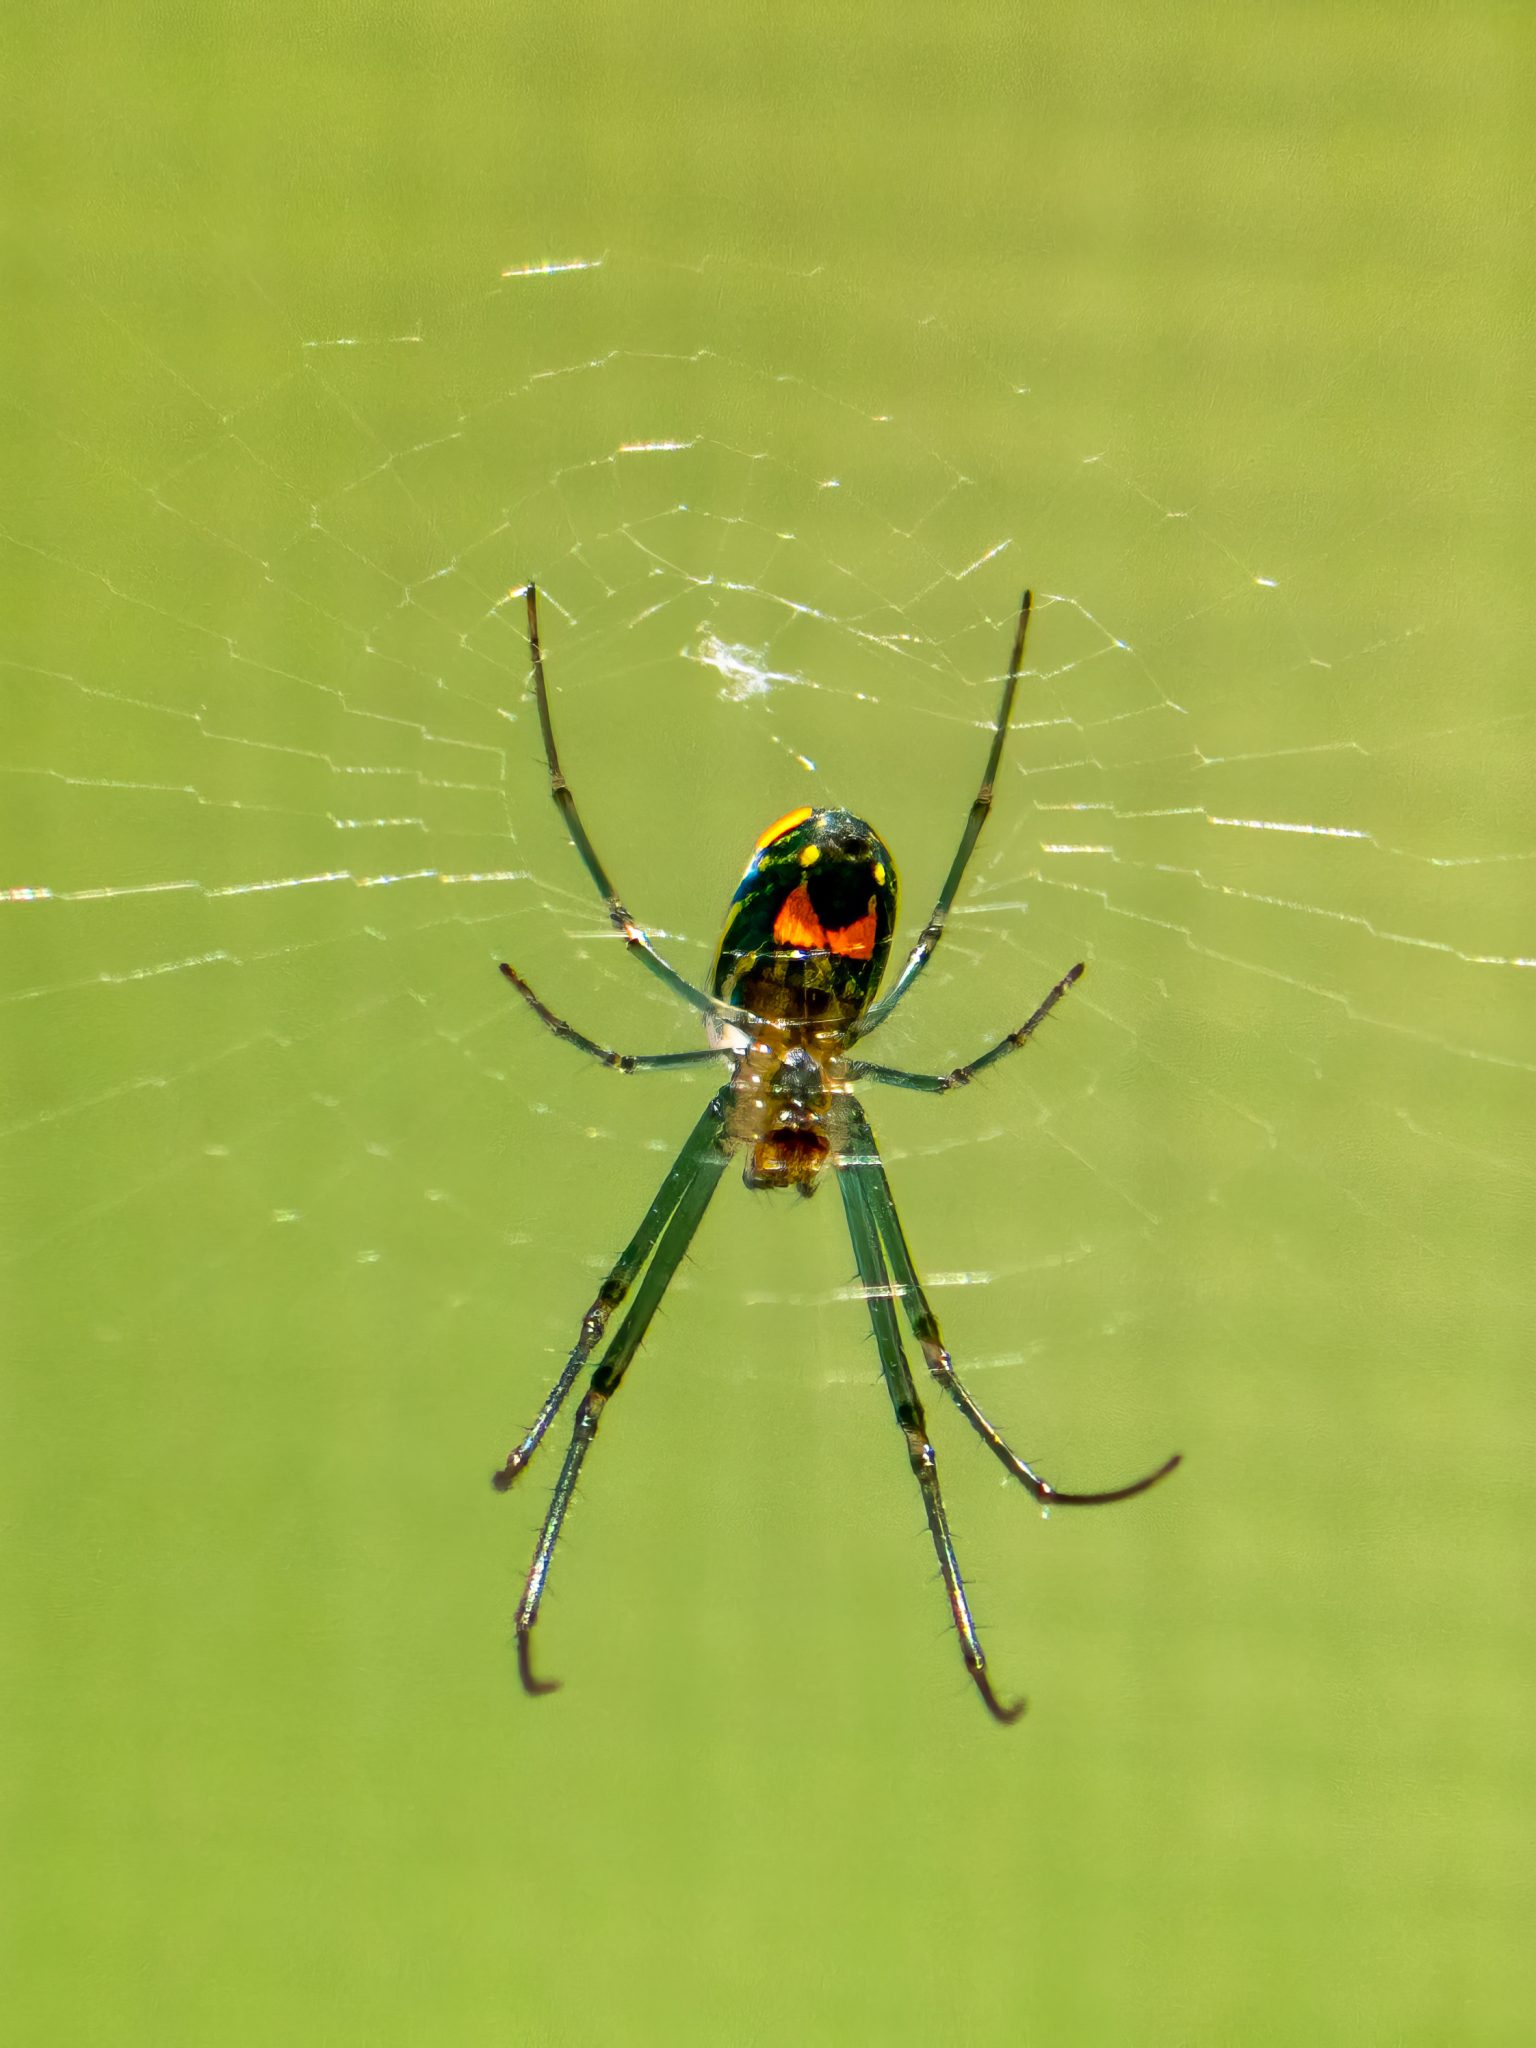 Orchard Orbweaver Spider, Leucauge argyrobapta in Central Florida making a web